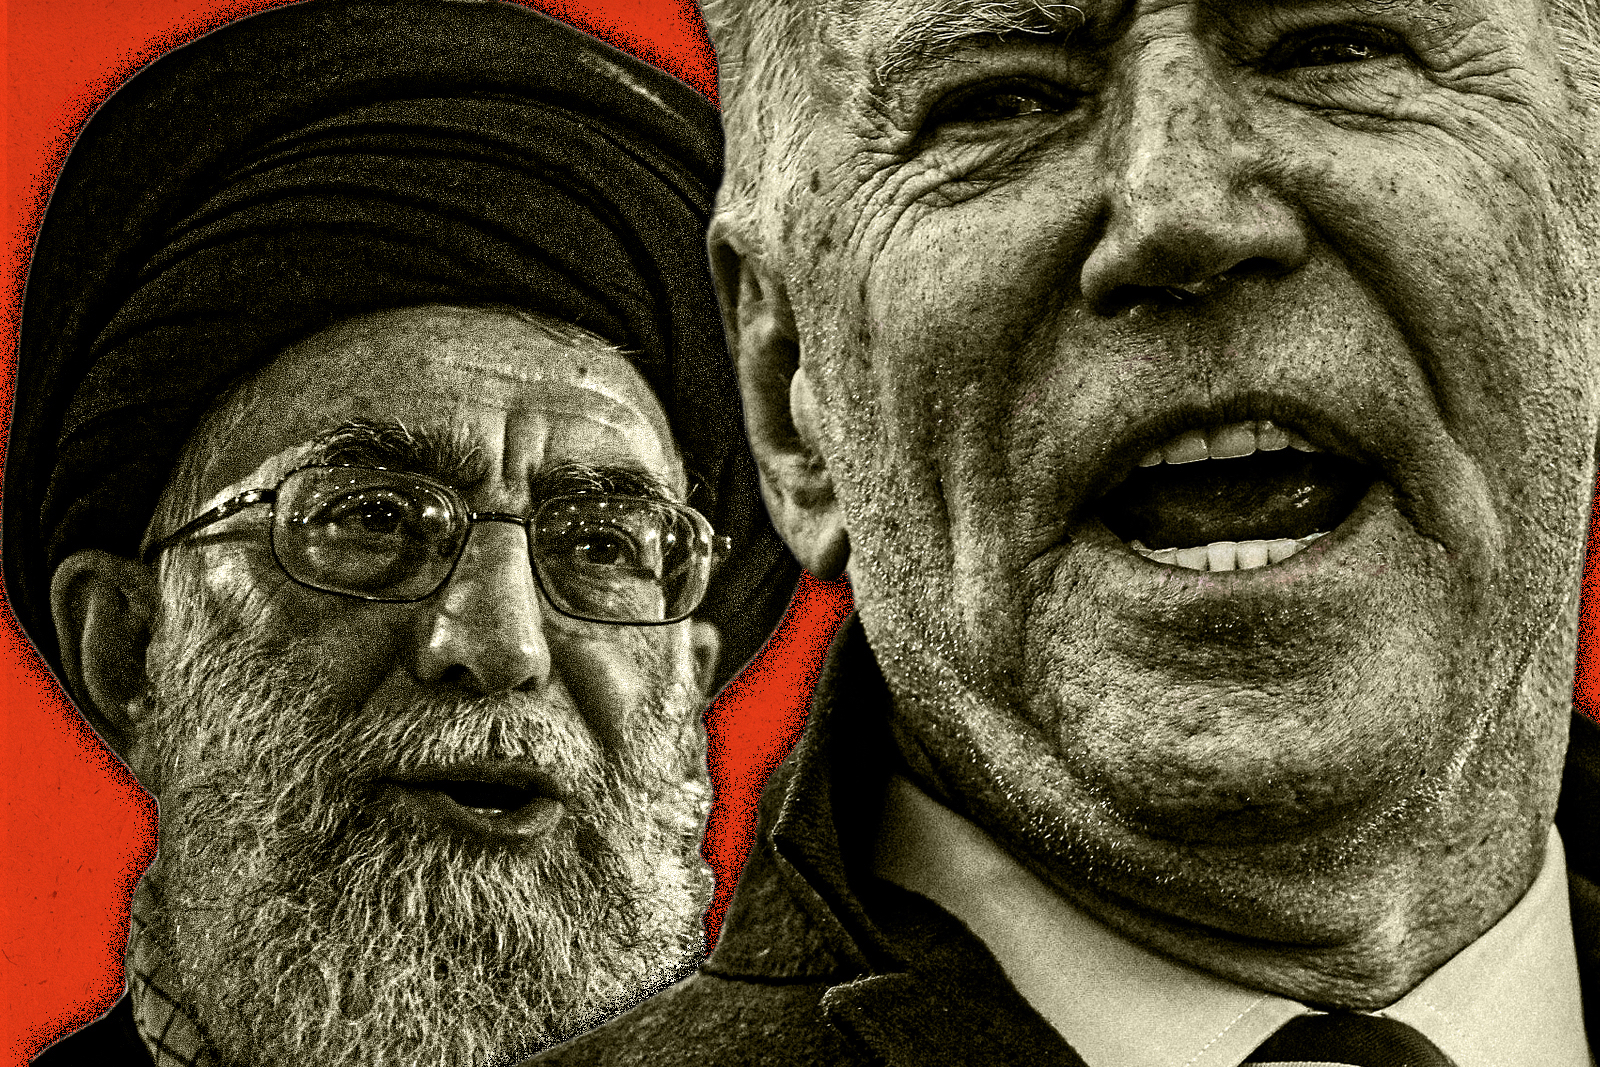 Ali Khamenei and Joe Biden